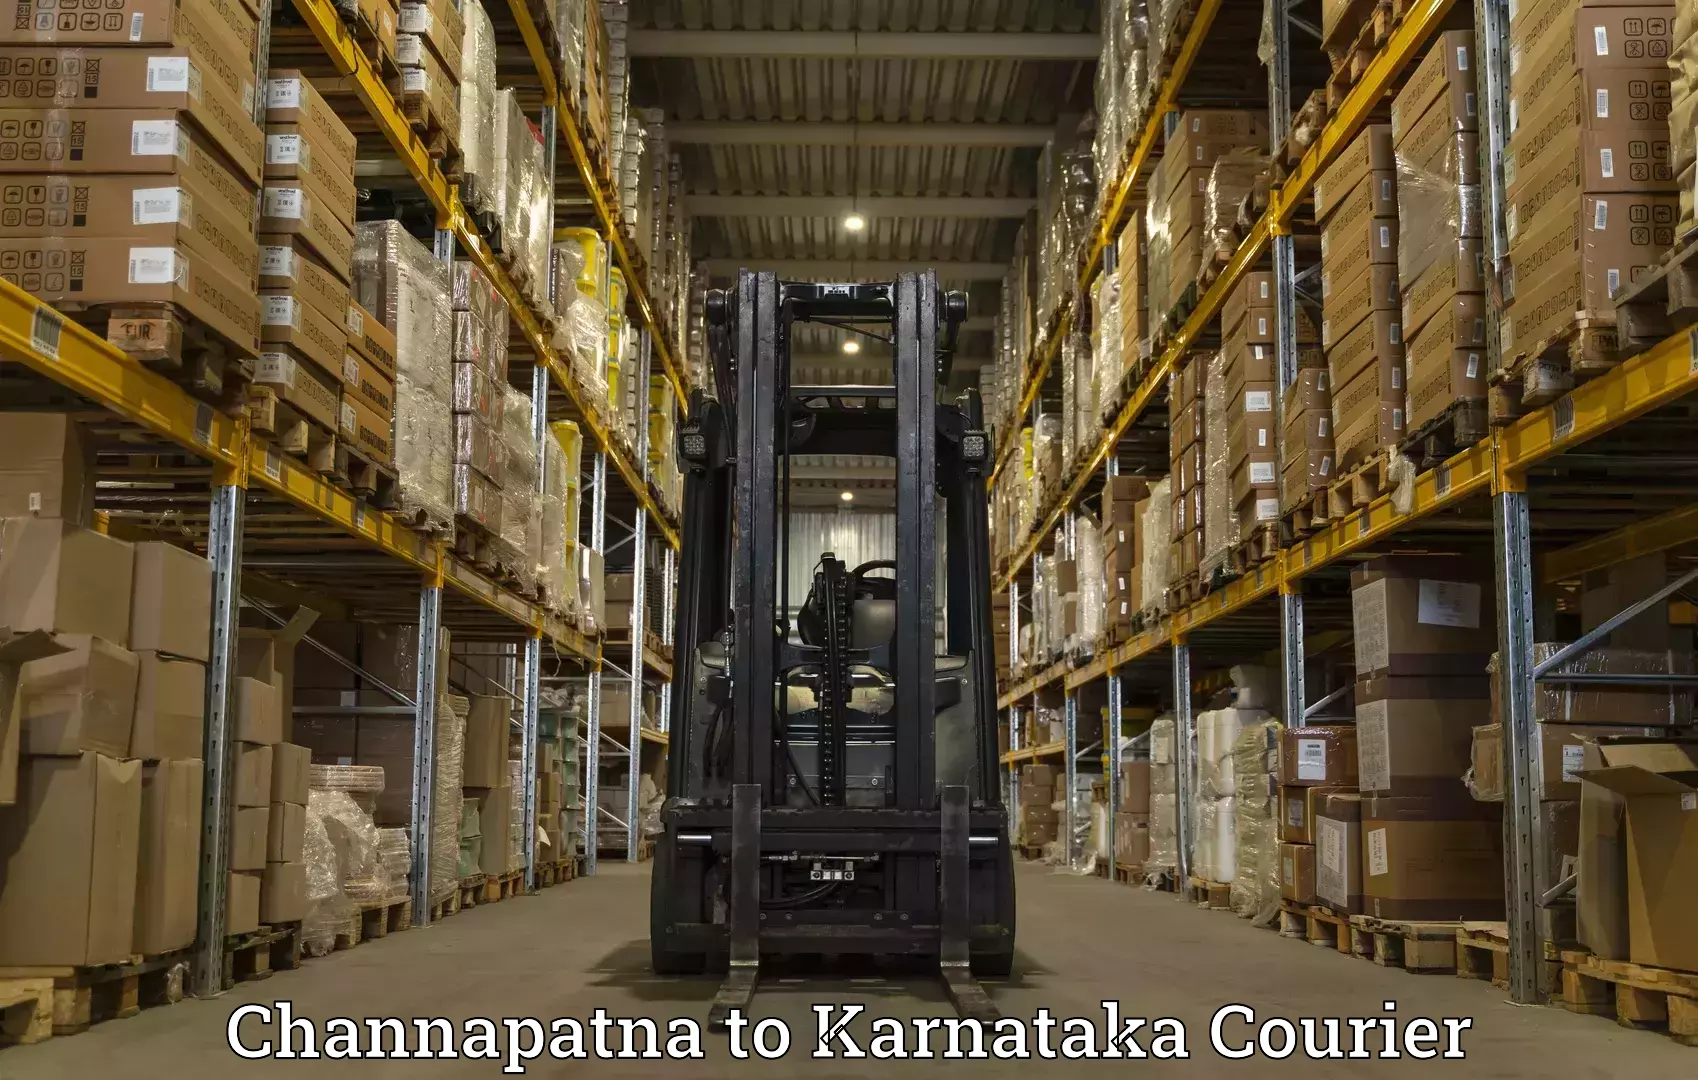 Speedy delivery service Channapatna to Karnataka